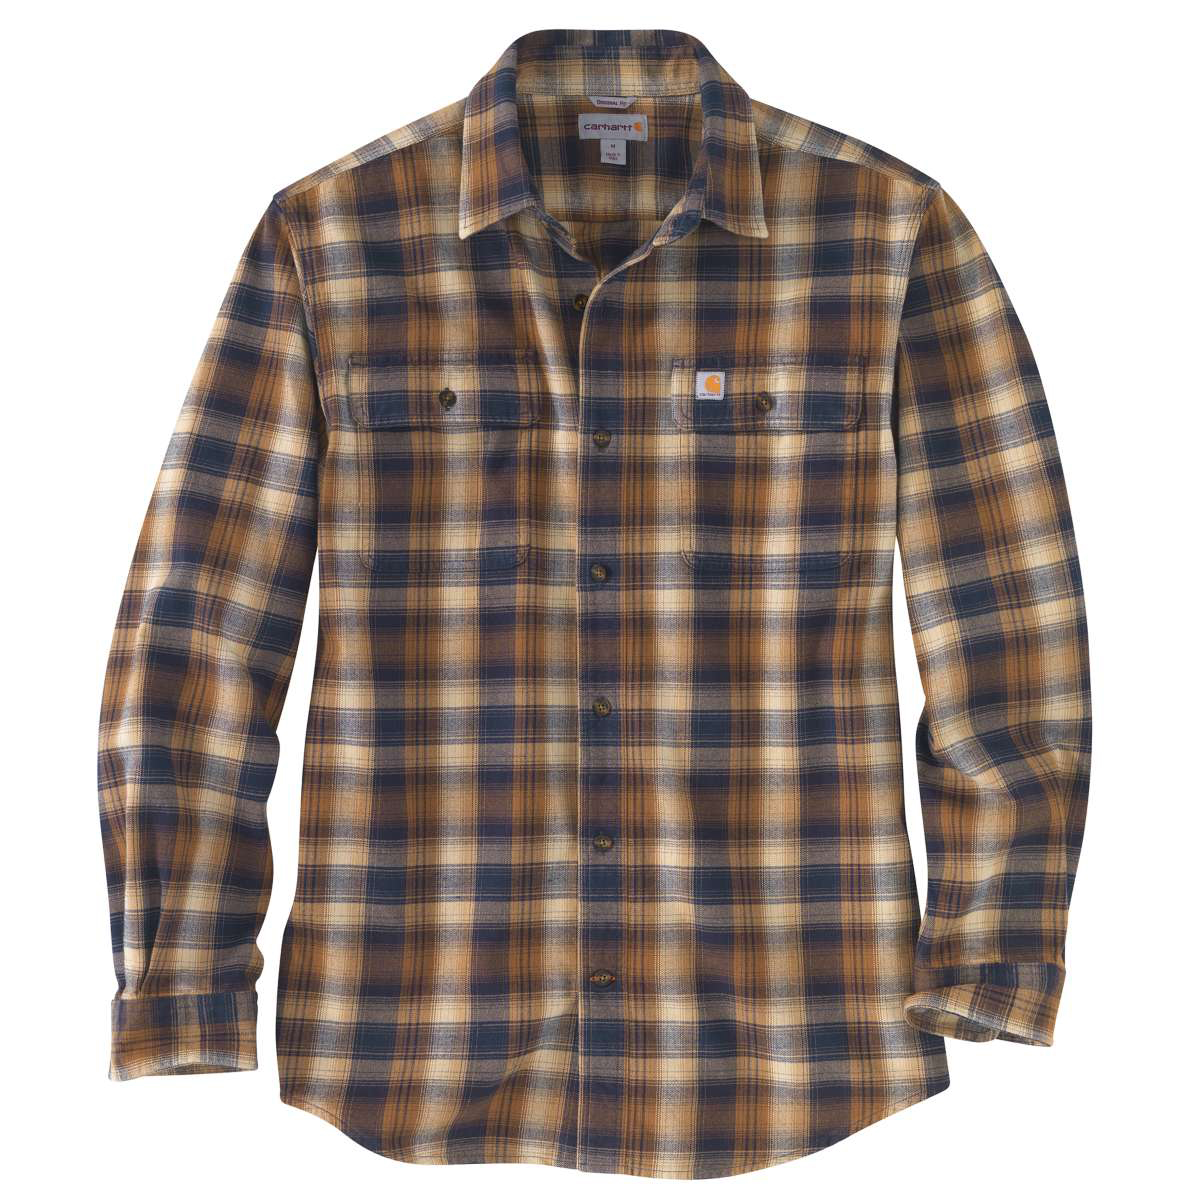 Carhartt Men's Hubbard Flannel Long-Sleeve Shirt - Brown, M